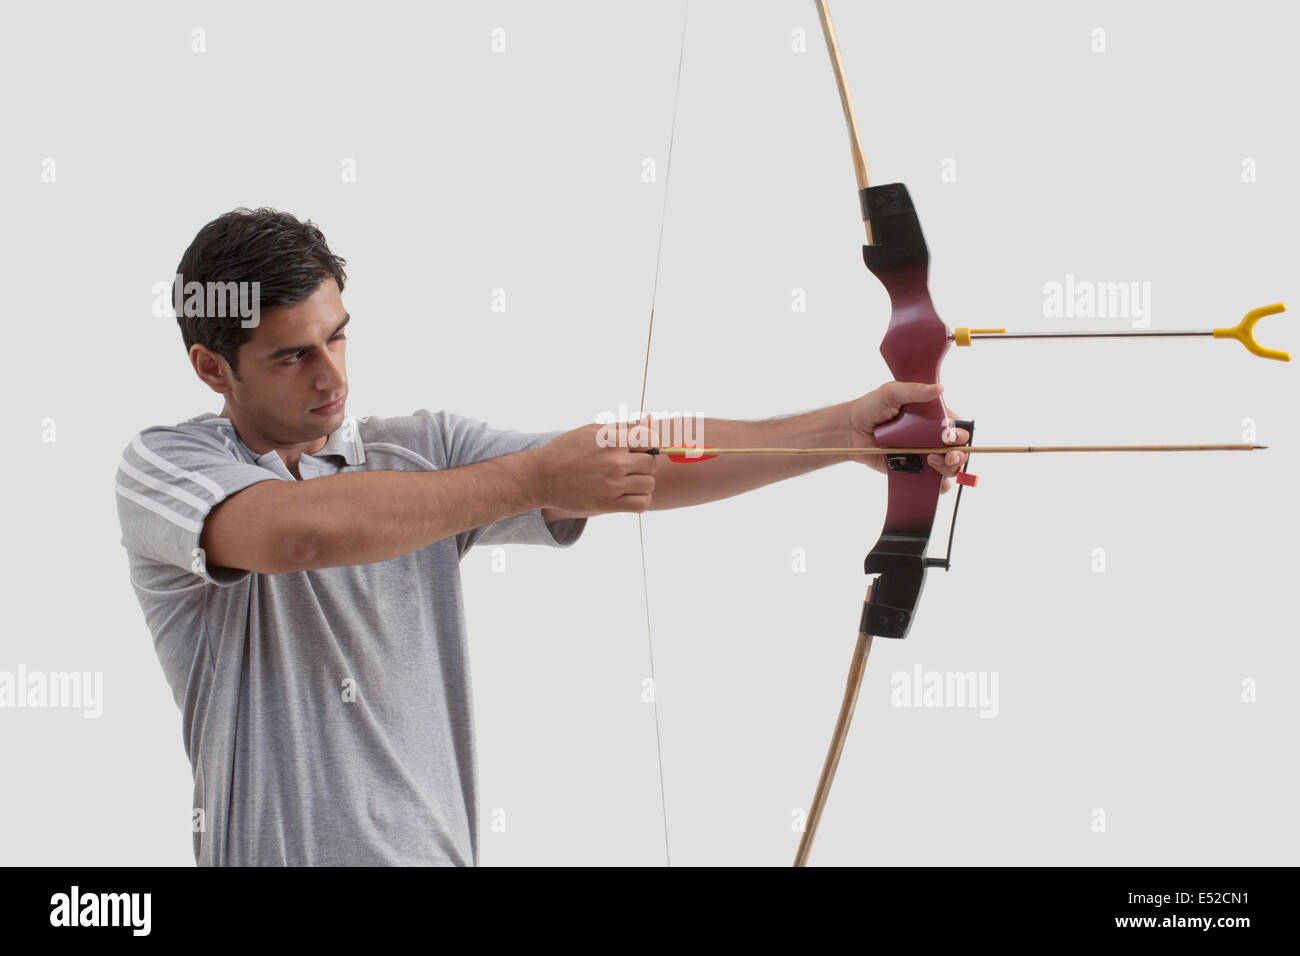 Männliche Schütze mit dem Ziel, Pfeil und Bogen gegen grauen Hintergrund Stockfoto